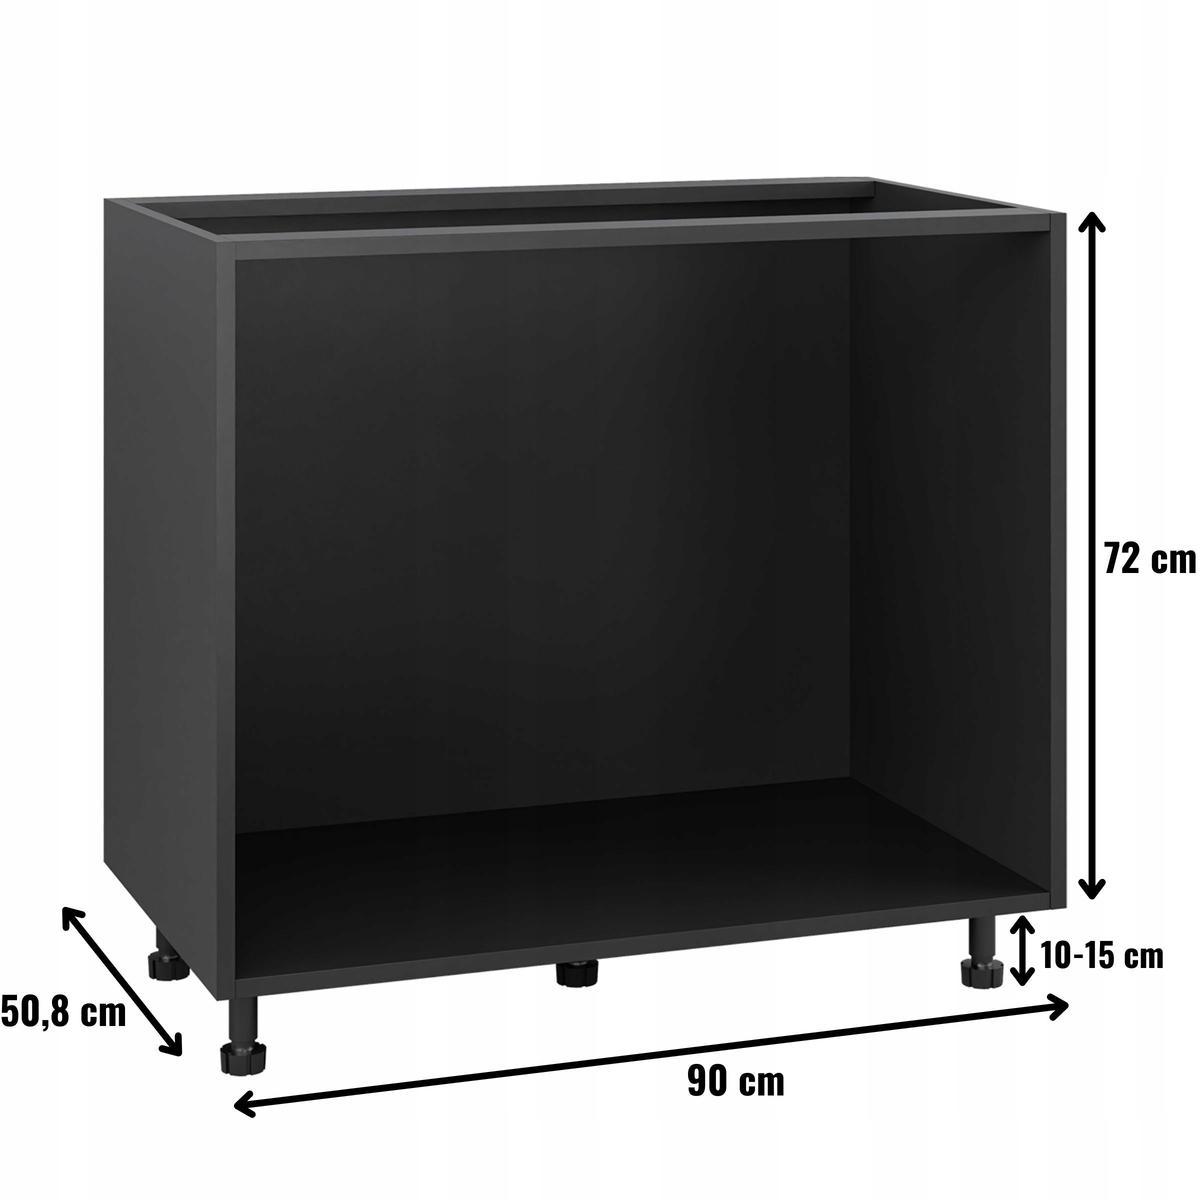 Korpus szafka kuchenna dolna pod szuflady 90x82x50,8 cm z akcesoriami czarny  nr. 2